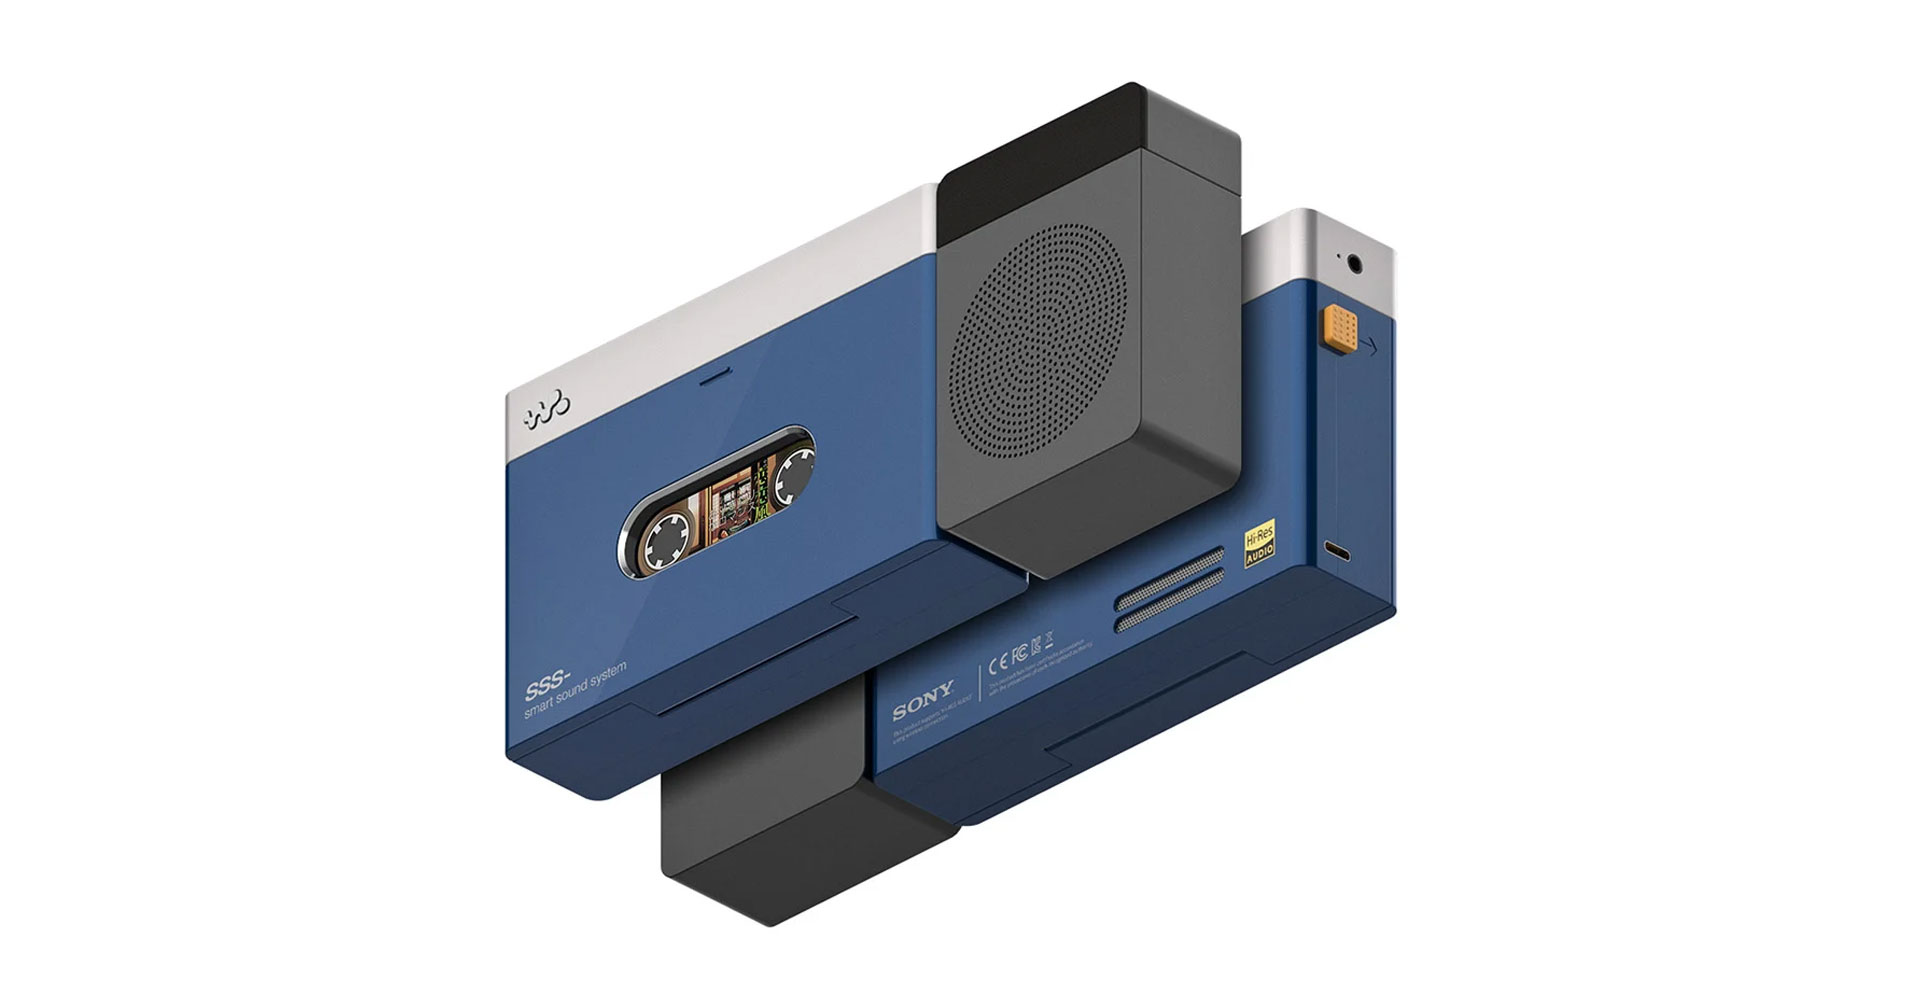 คอนเซ็ปต์ Sony Walkman สุดเท่ เสียบสมาร์ตโฟนแทนเทป ชวนคิดถึงวันวานในยุคแอนะล็อก